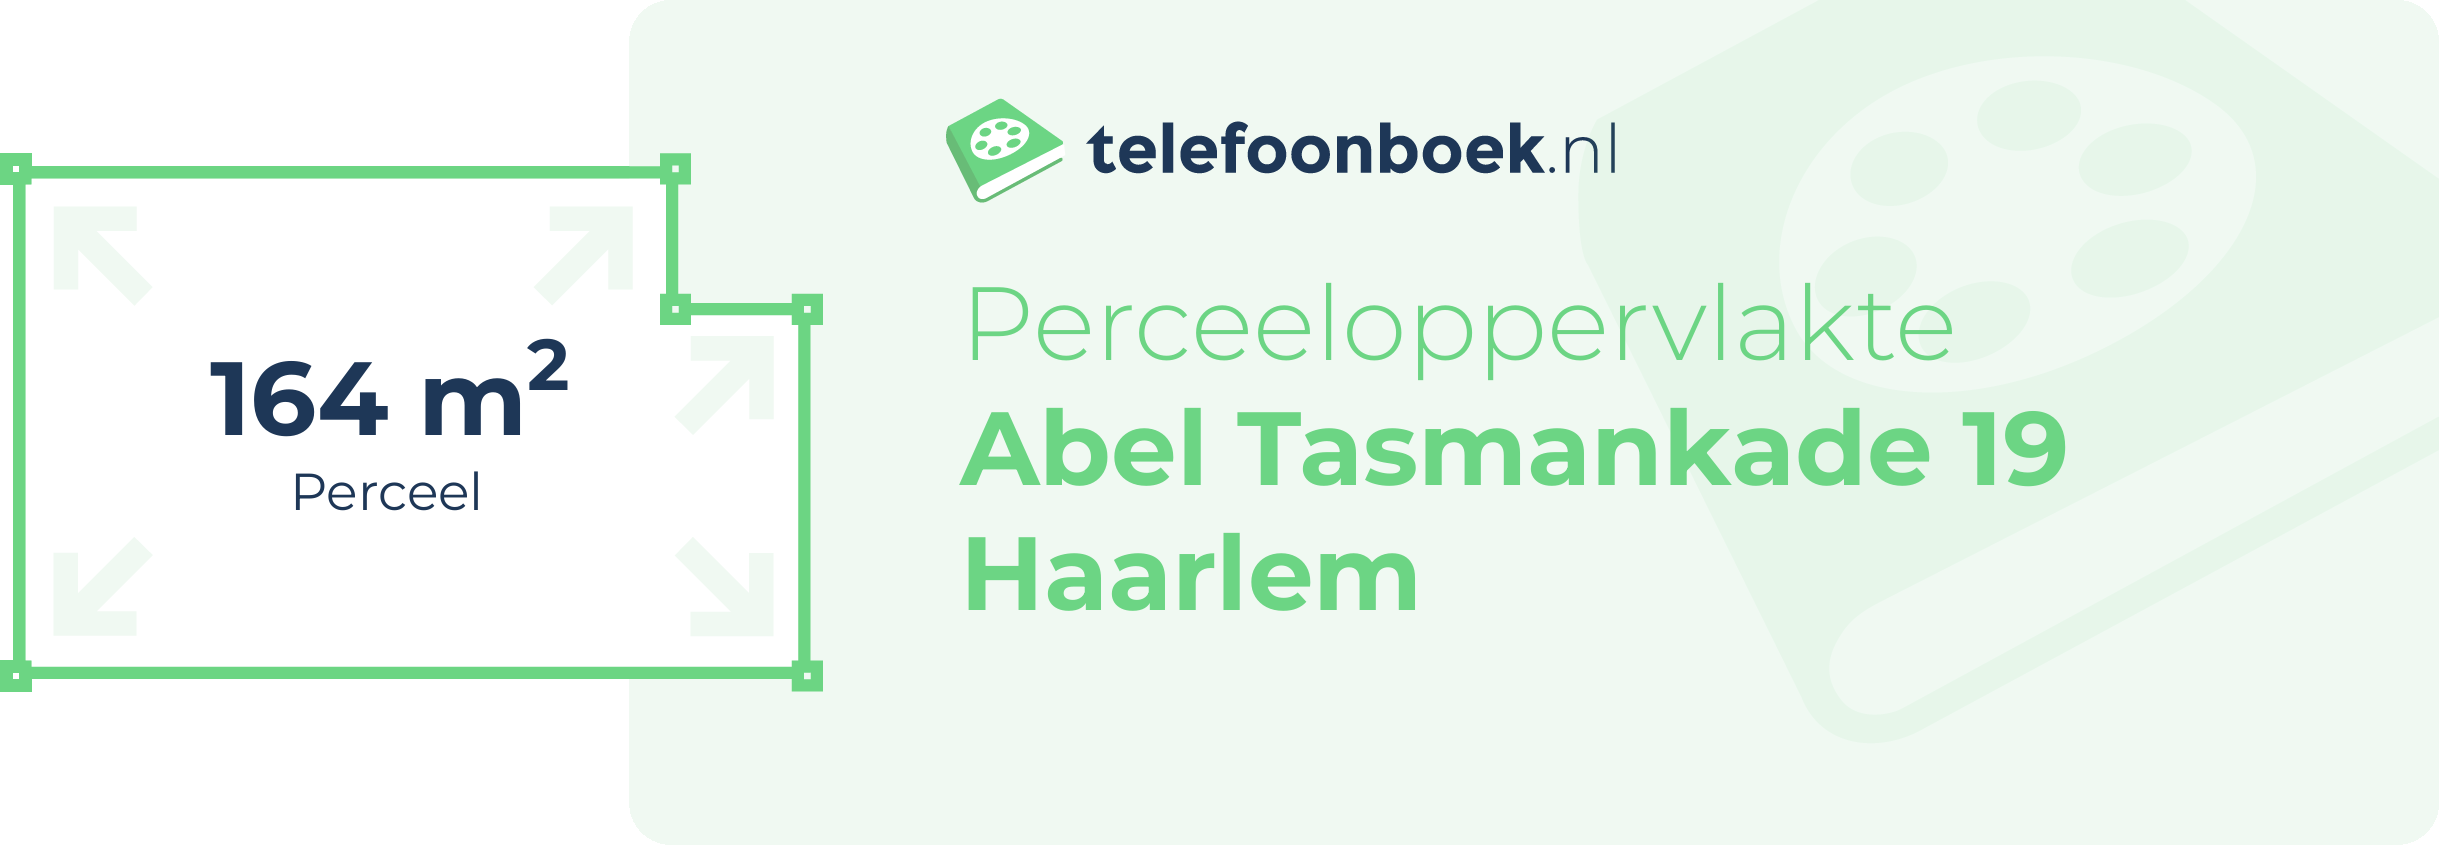 Perceeloppervlakte Abel Tasmankade 19 Haarlem